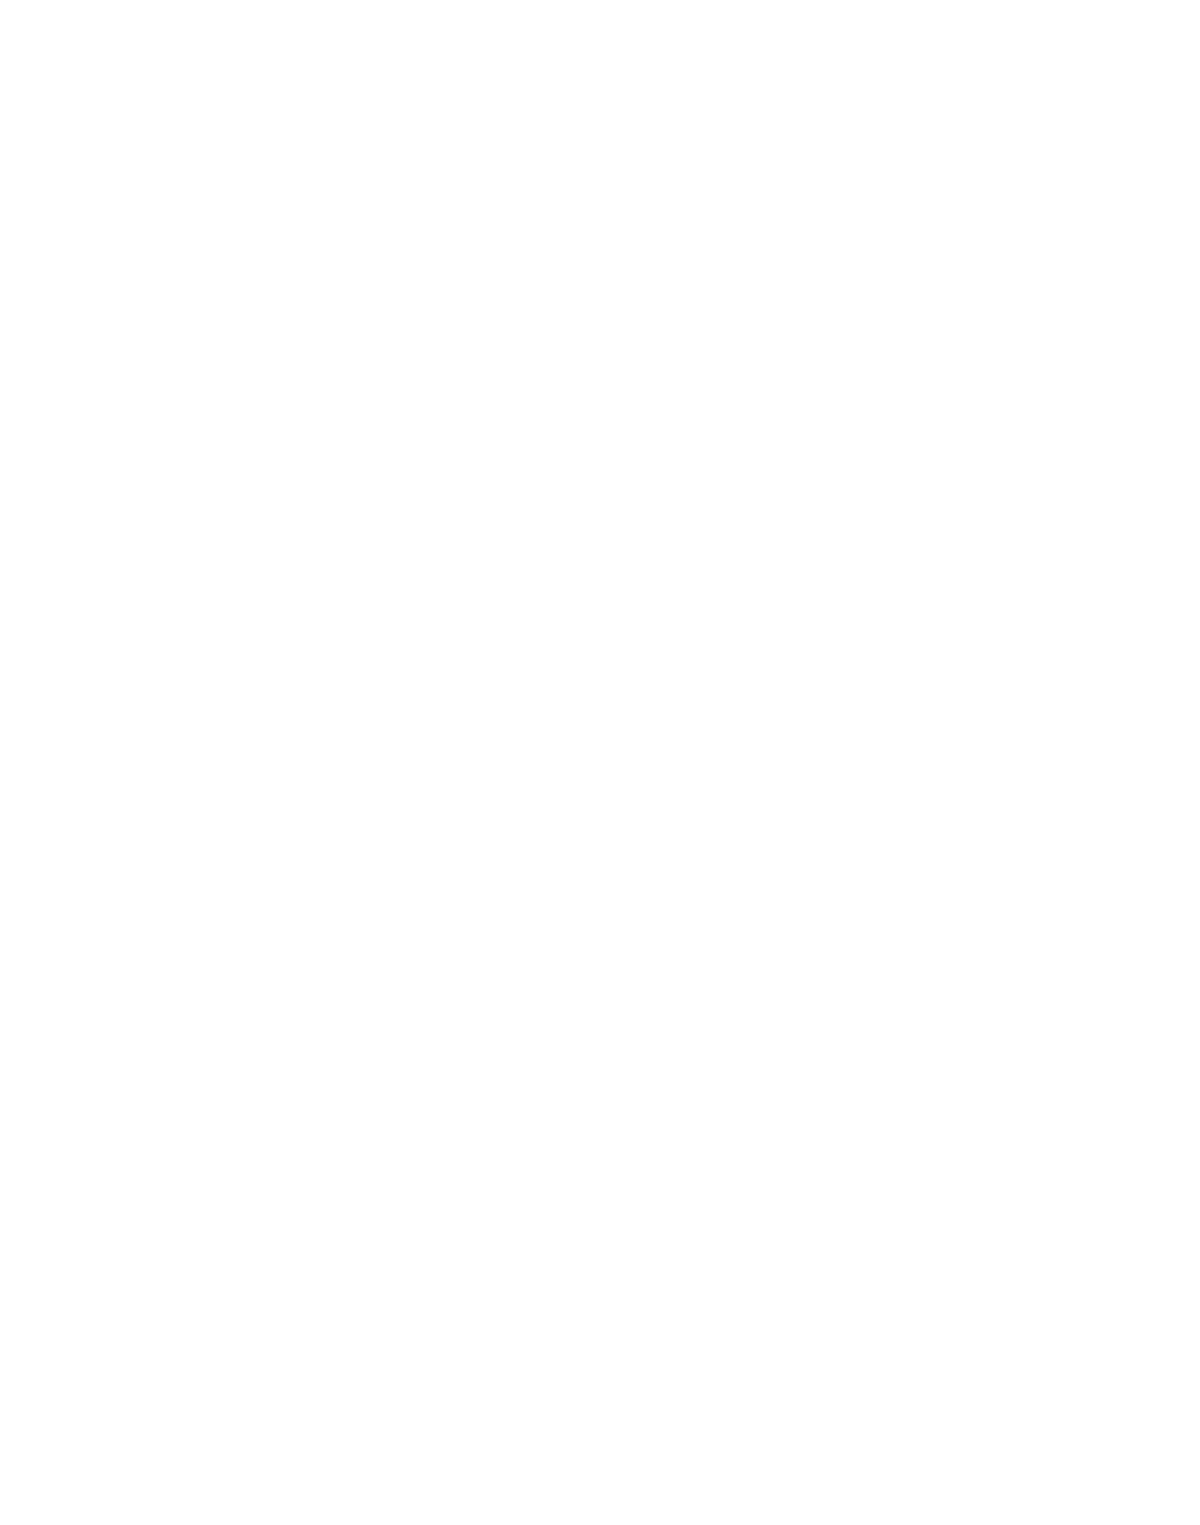 Plus Marcus